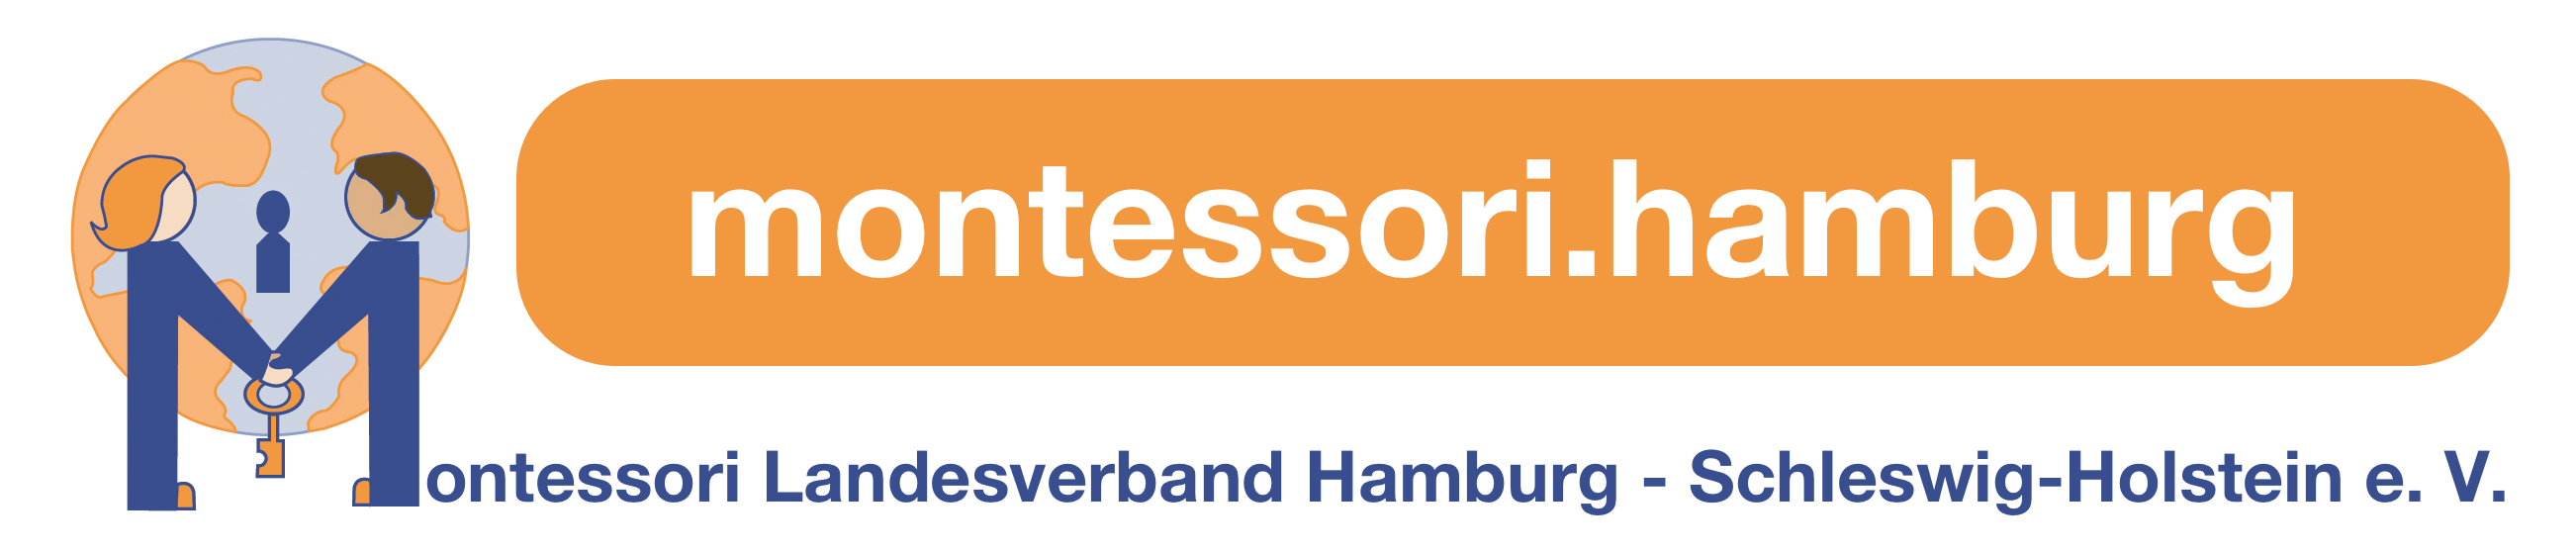 Montessori Landesverband Hamburg - Schleswig-Holstein